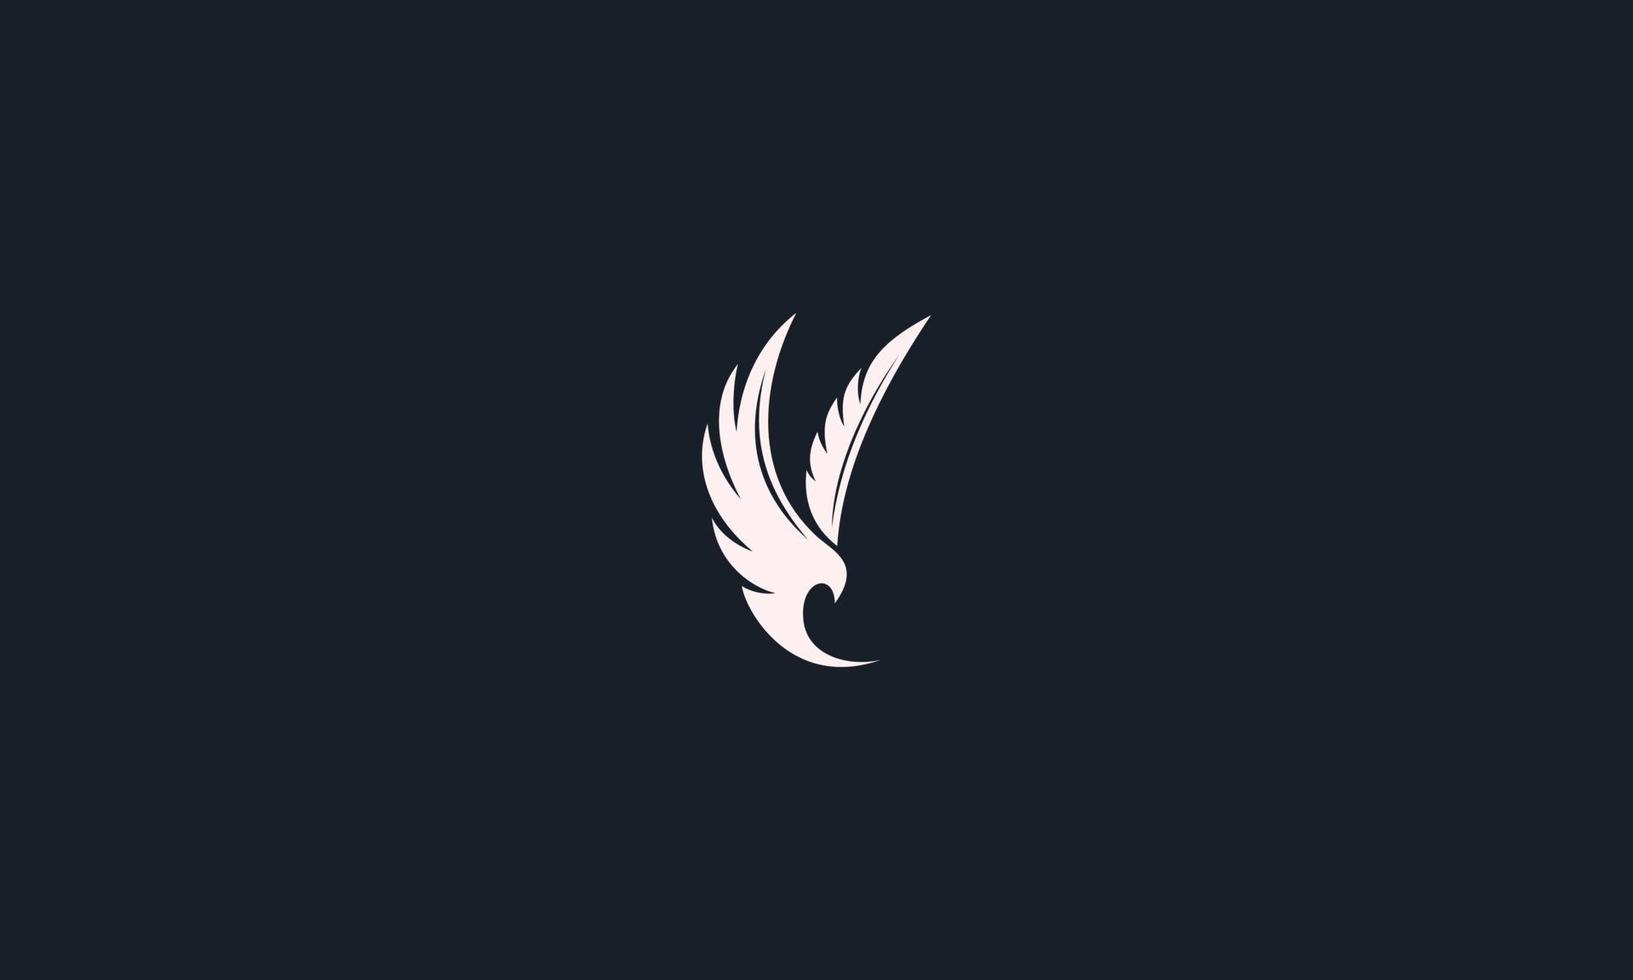 Fly Bird logo design template. Vector Abstract